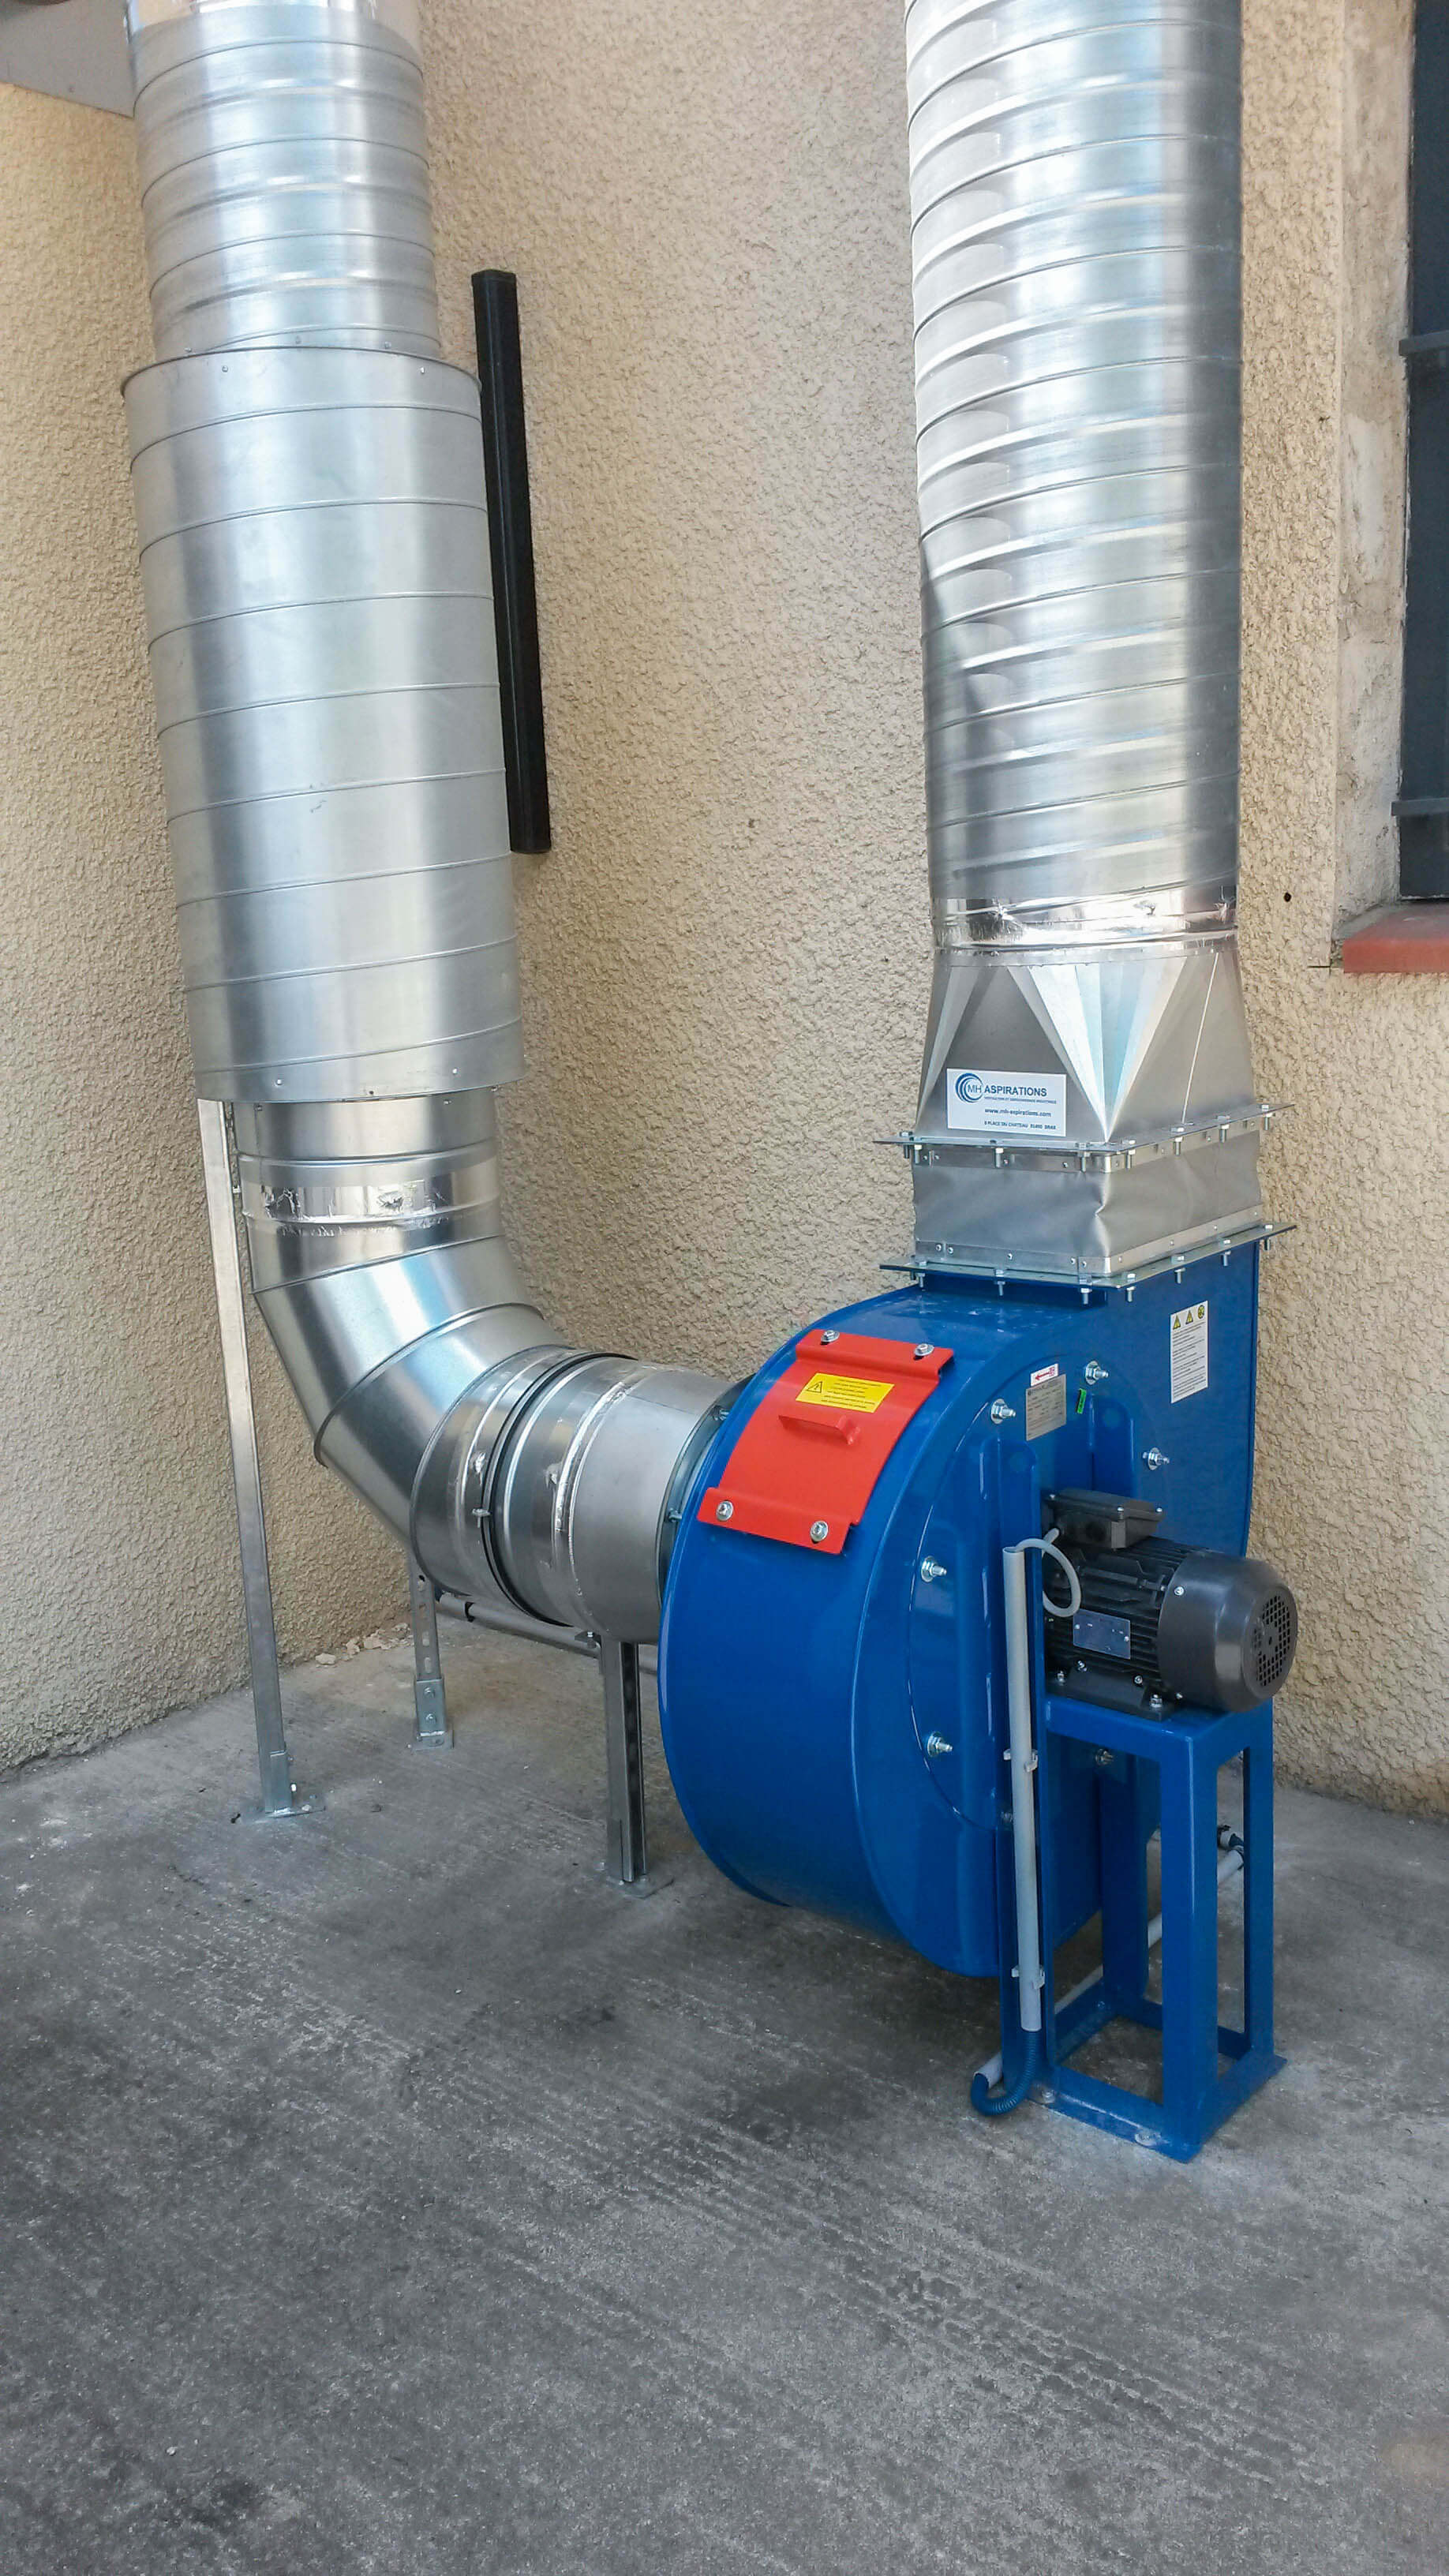 Ventilateur centrifuge bleu atex pour aspiration de fumée de plastique issue de presse à injecter / extrudeuse